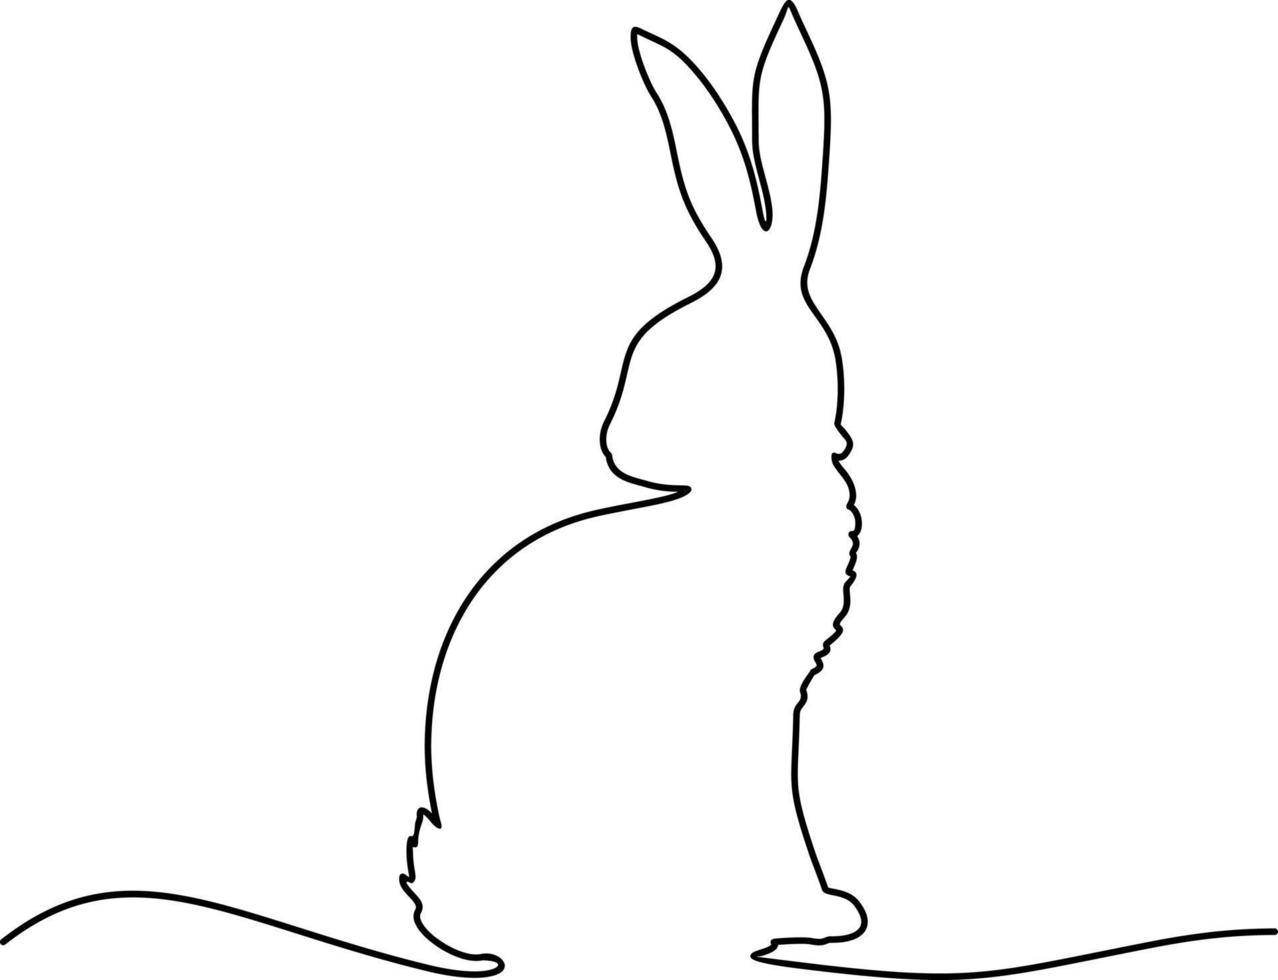 dessin en ligne continu du lapin de pâques. lapin de pâques dessin continu d'une ligne. bannière de lapin de pâques dans un style simple d'une ligne vecteur